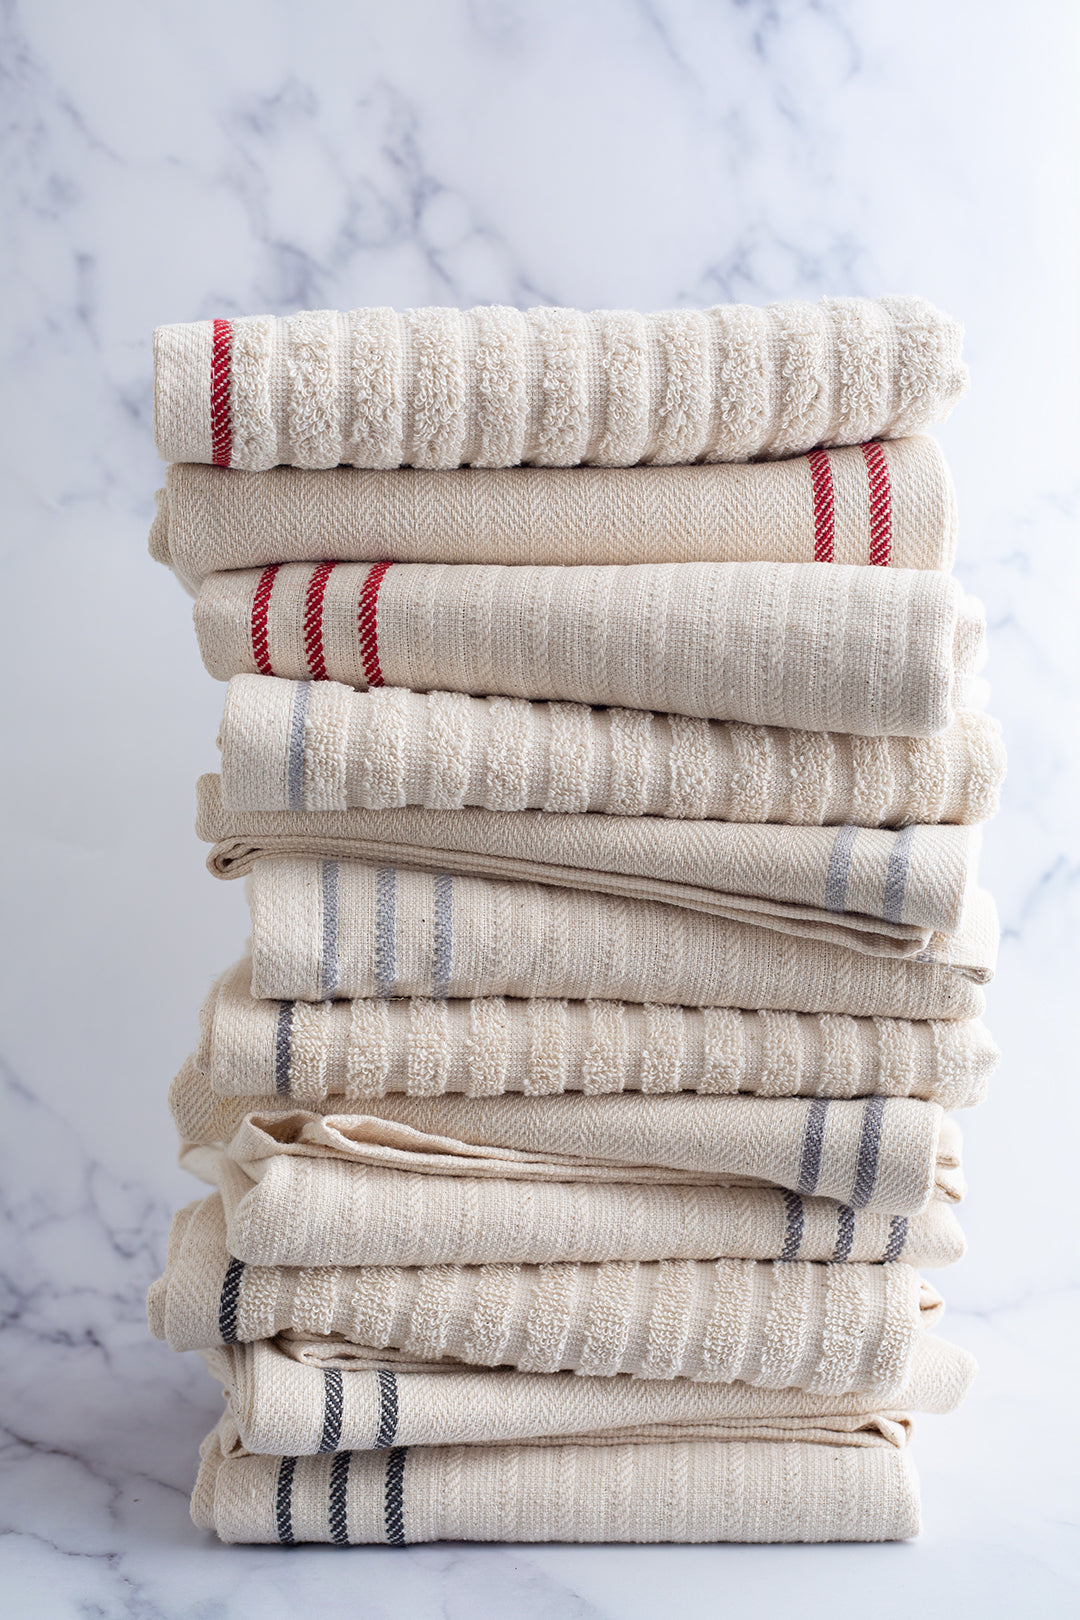 THYME SAGE 4x KITCHEN TOWELS set Made in Turkey 16x26 100% Premium Cotton  NEW